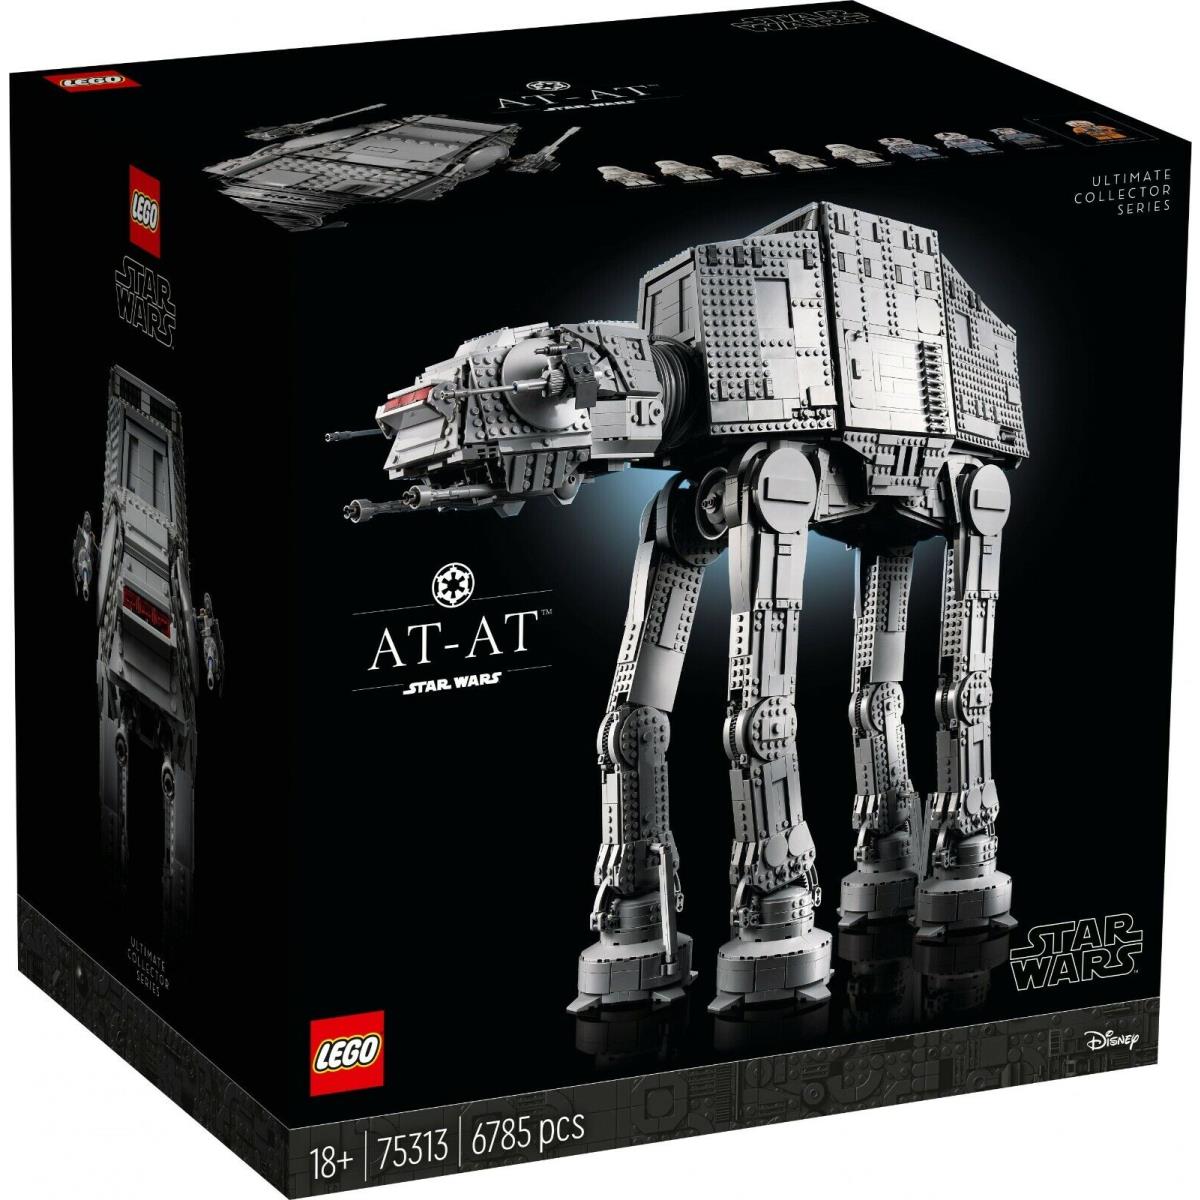 Lego 75313 Star Wars At-at Box 6785 Pcs. Ready to Ship